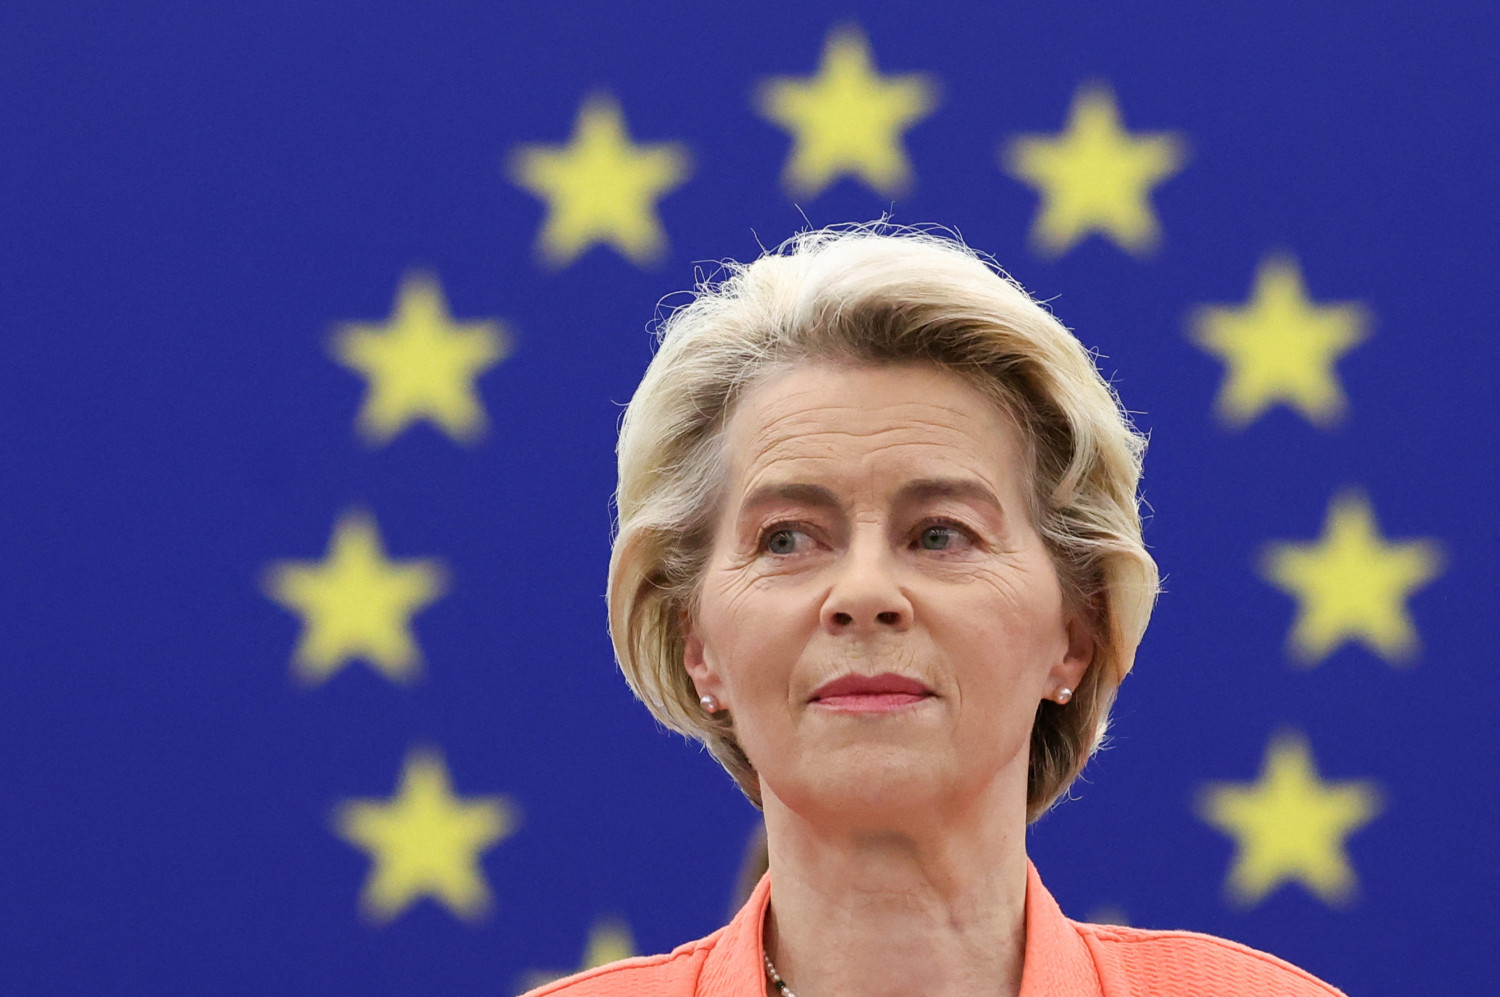 Los partidos proeuropeos suman mayoría para otra gran coalición con Von der Leyen